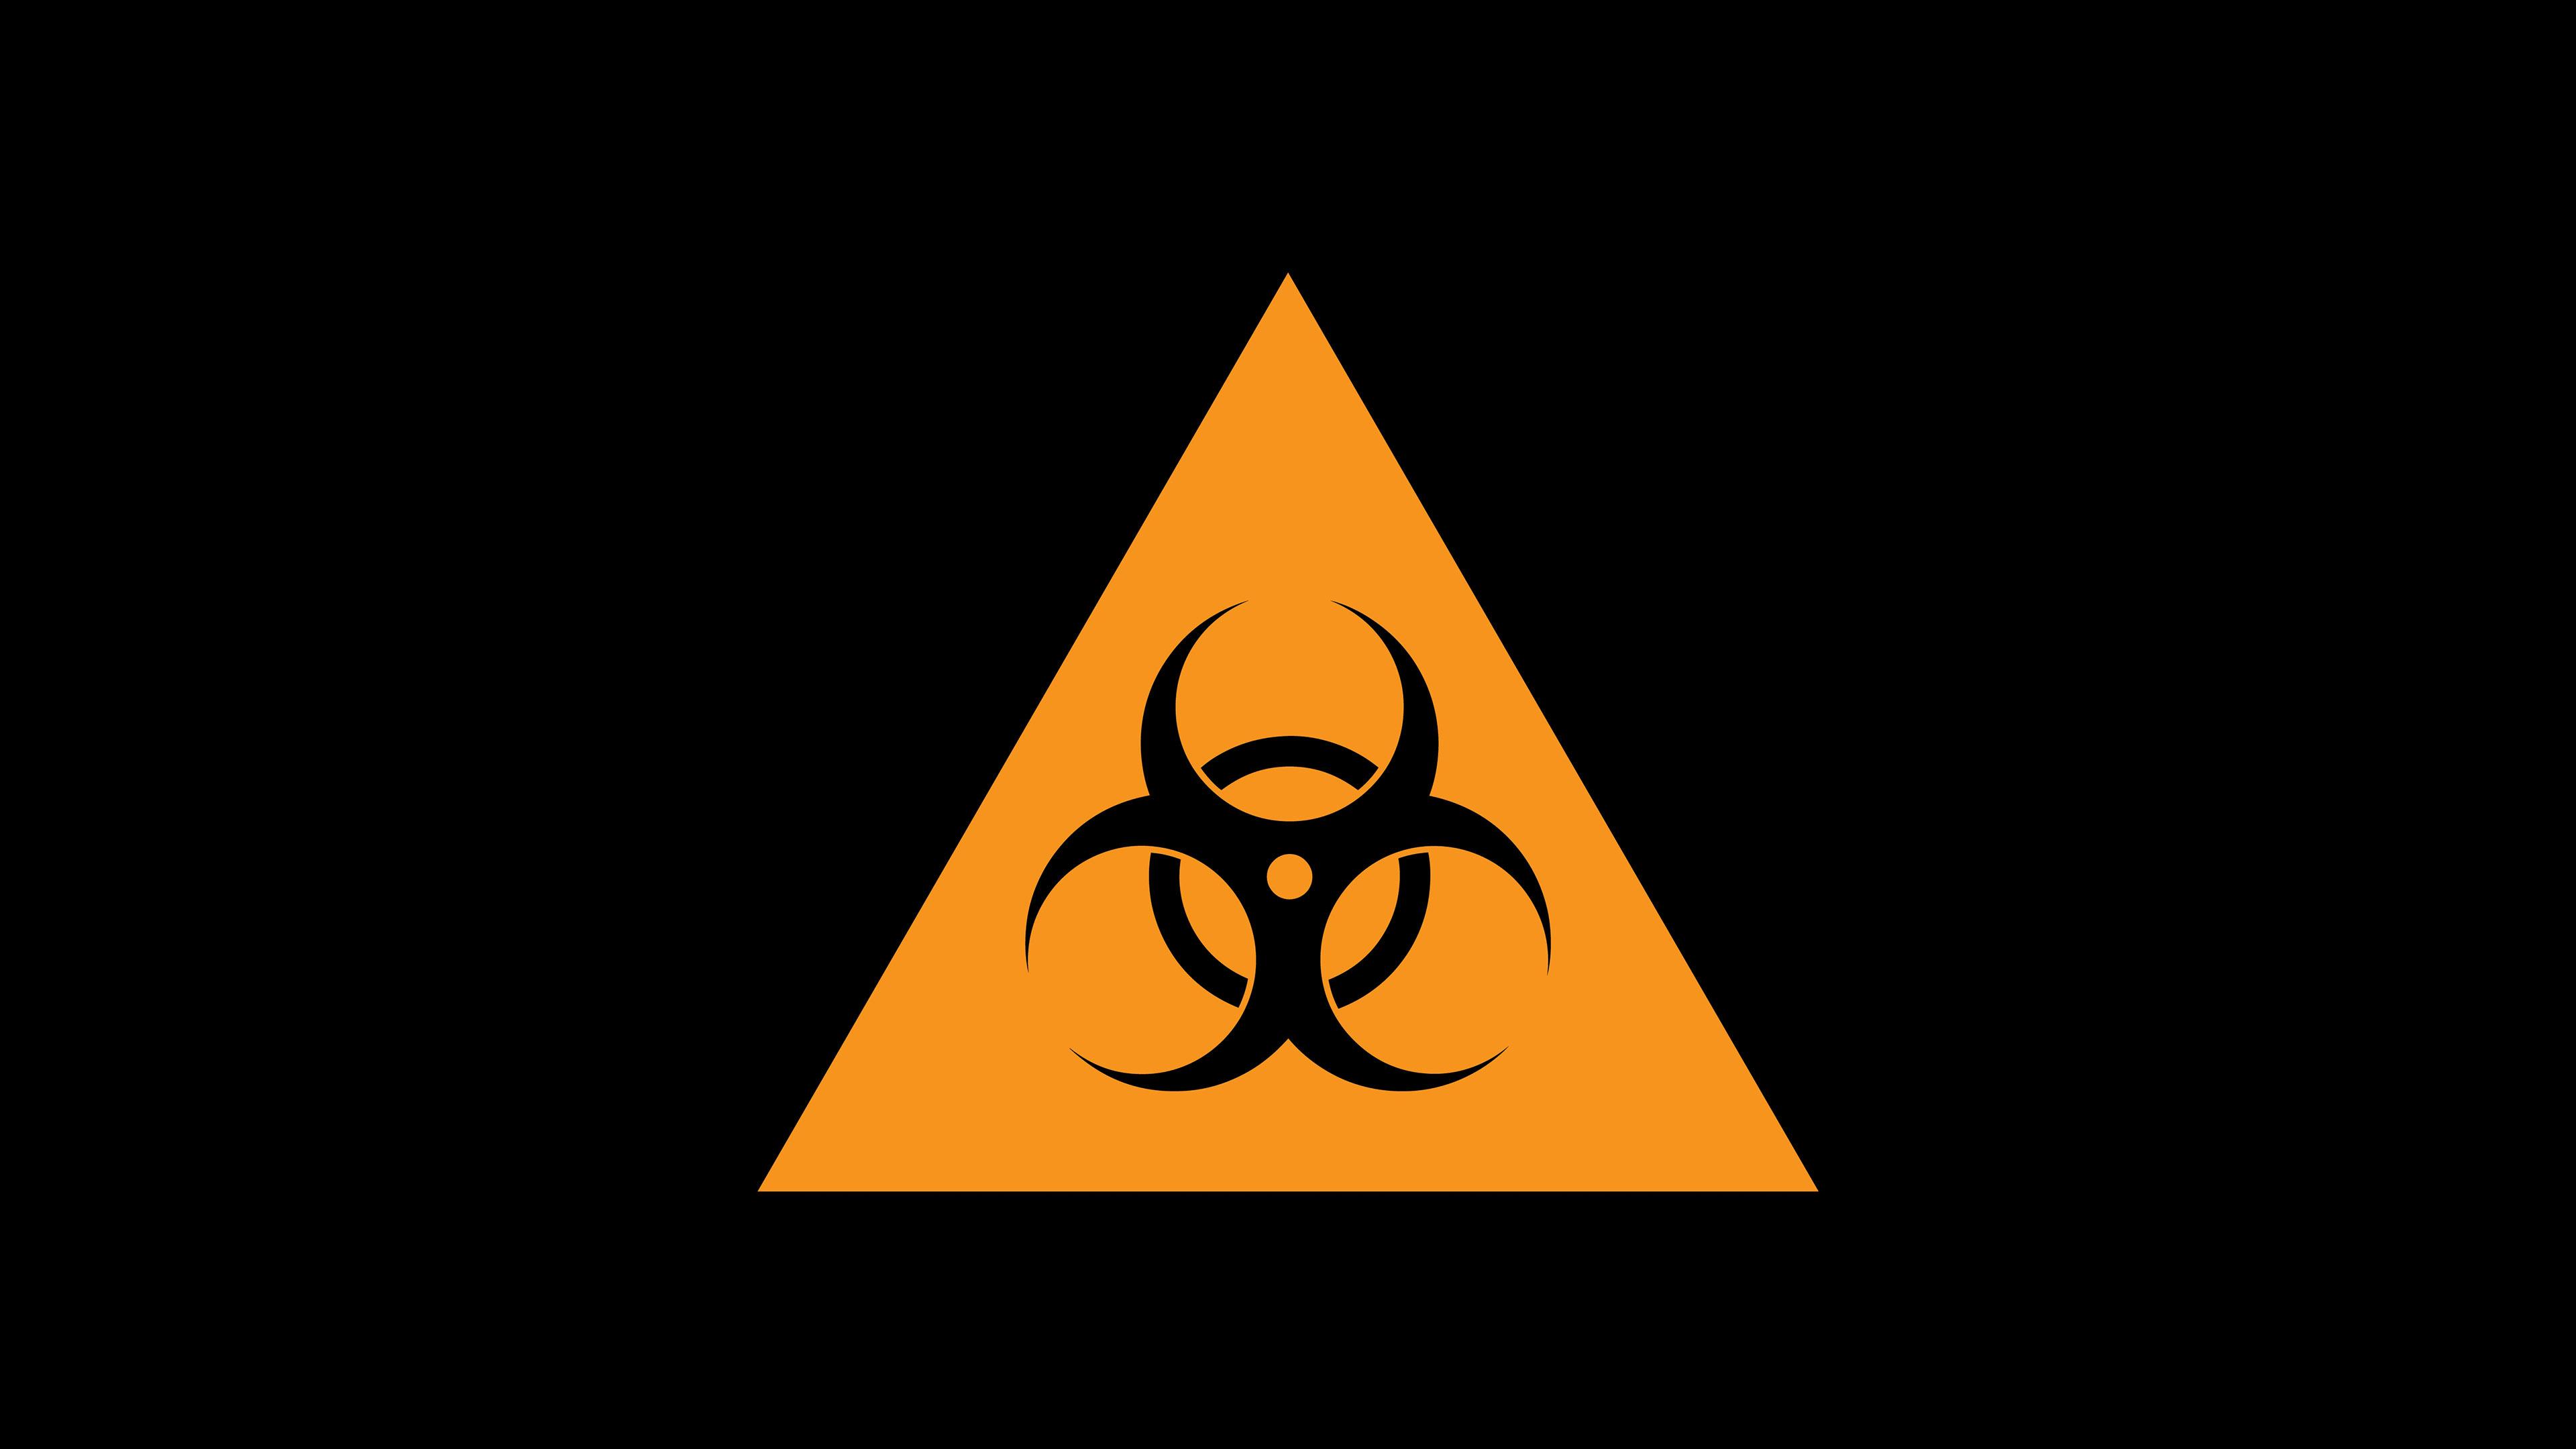 Hd Biohazard Sign In A Triangle Wallpaper - Biohazard Desktop - HD Wallpaper 